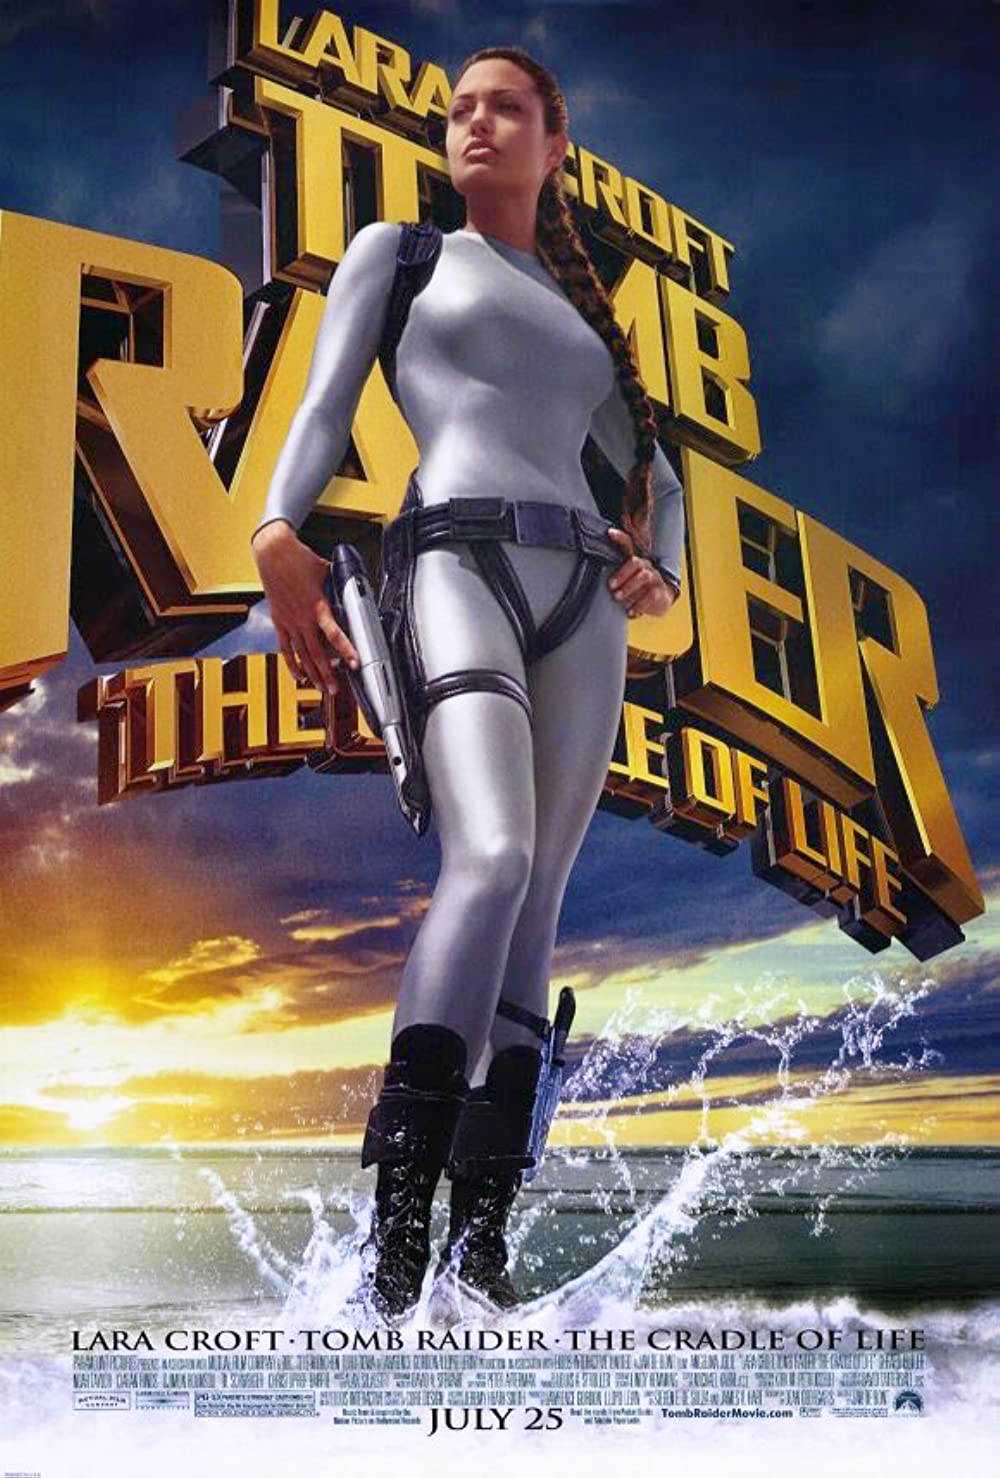 Filmbeschreibung zu Lara Croft Tomb Raider  - Die Wiege des Lebens